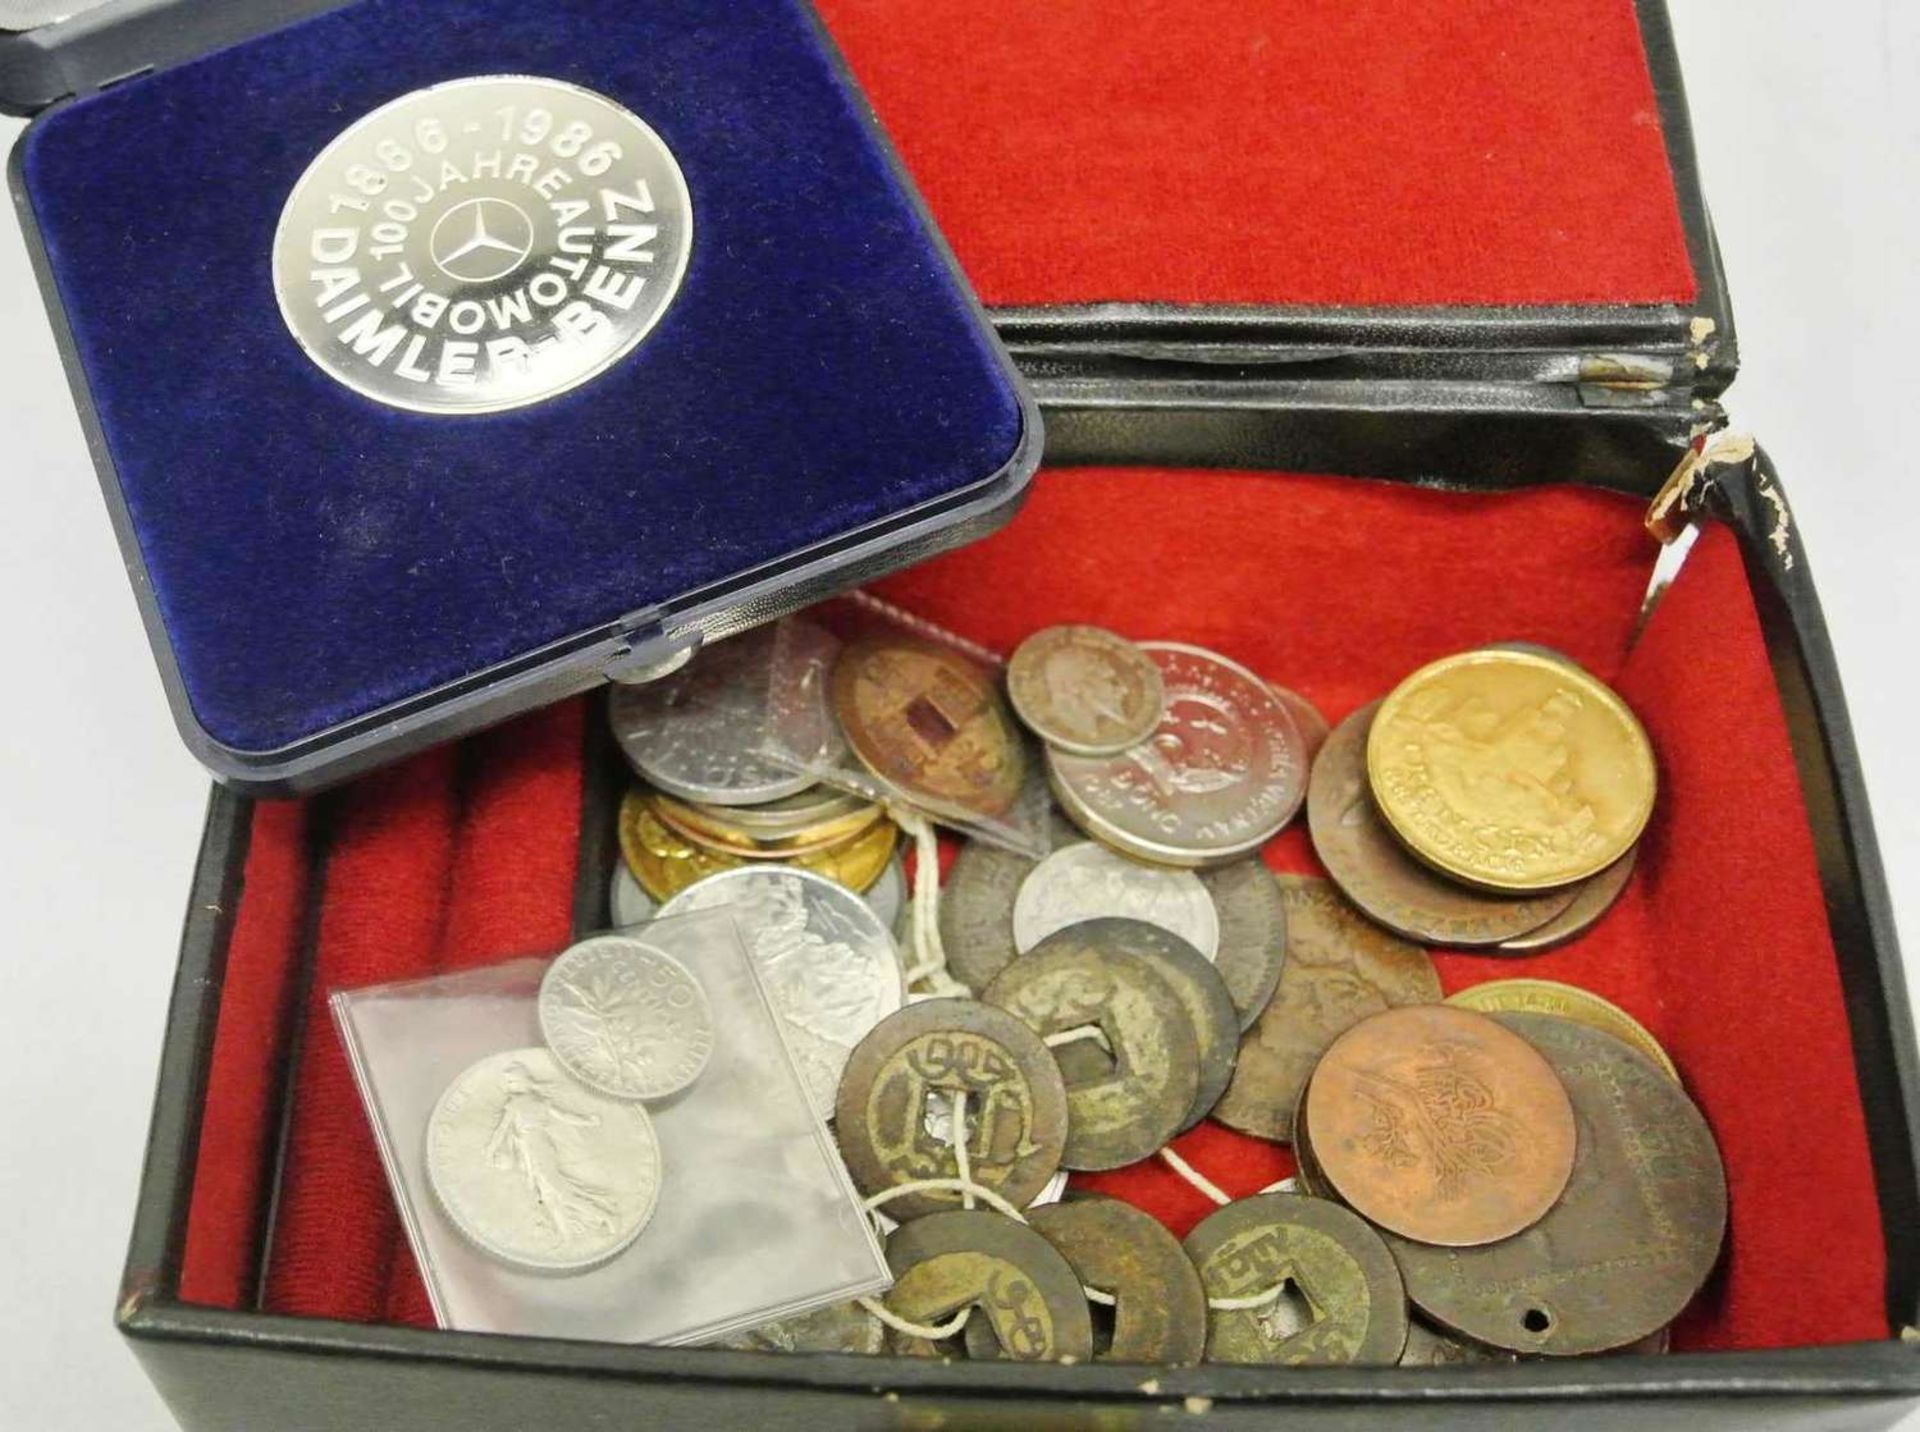 Lot Münzen und Medaillen, dabei auch Ältere und etwas Silber. Besichtigung empfohlen